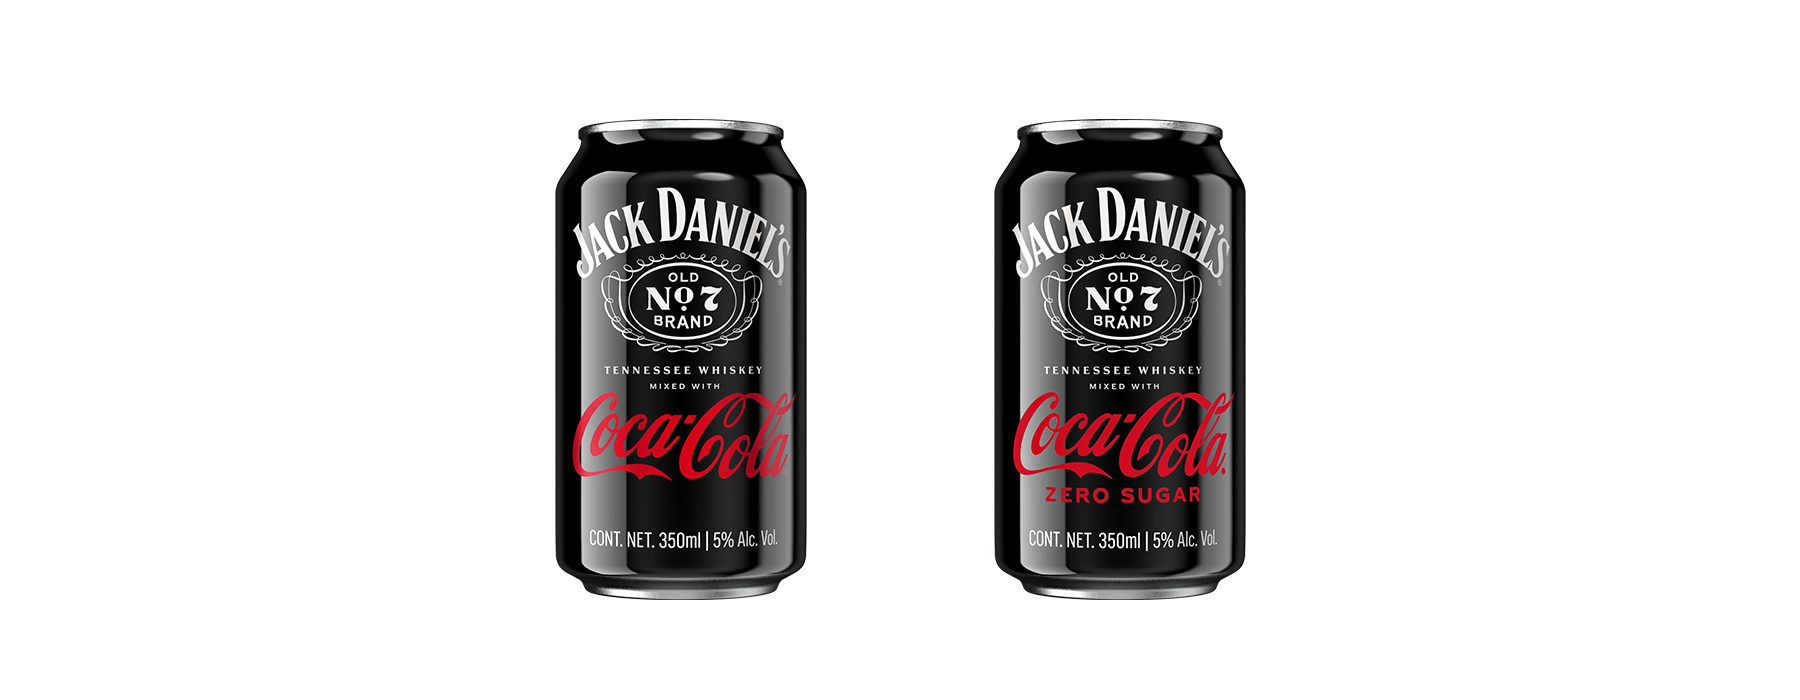 Dos latas de Jack Daniel’s & Coca-Cola